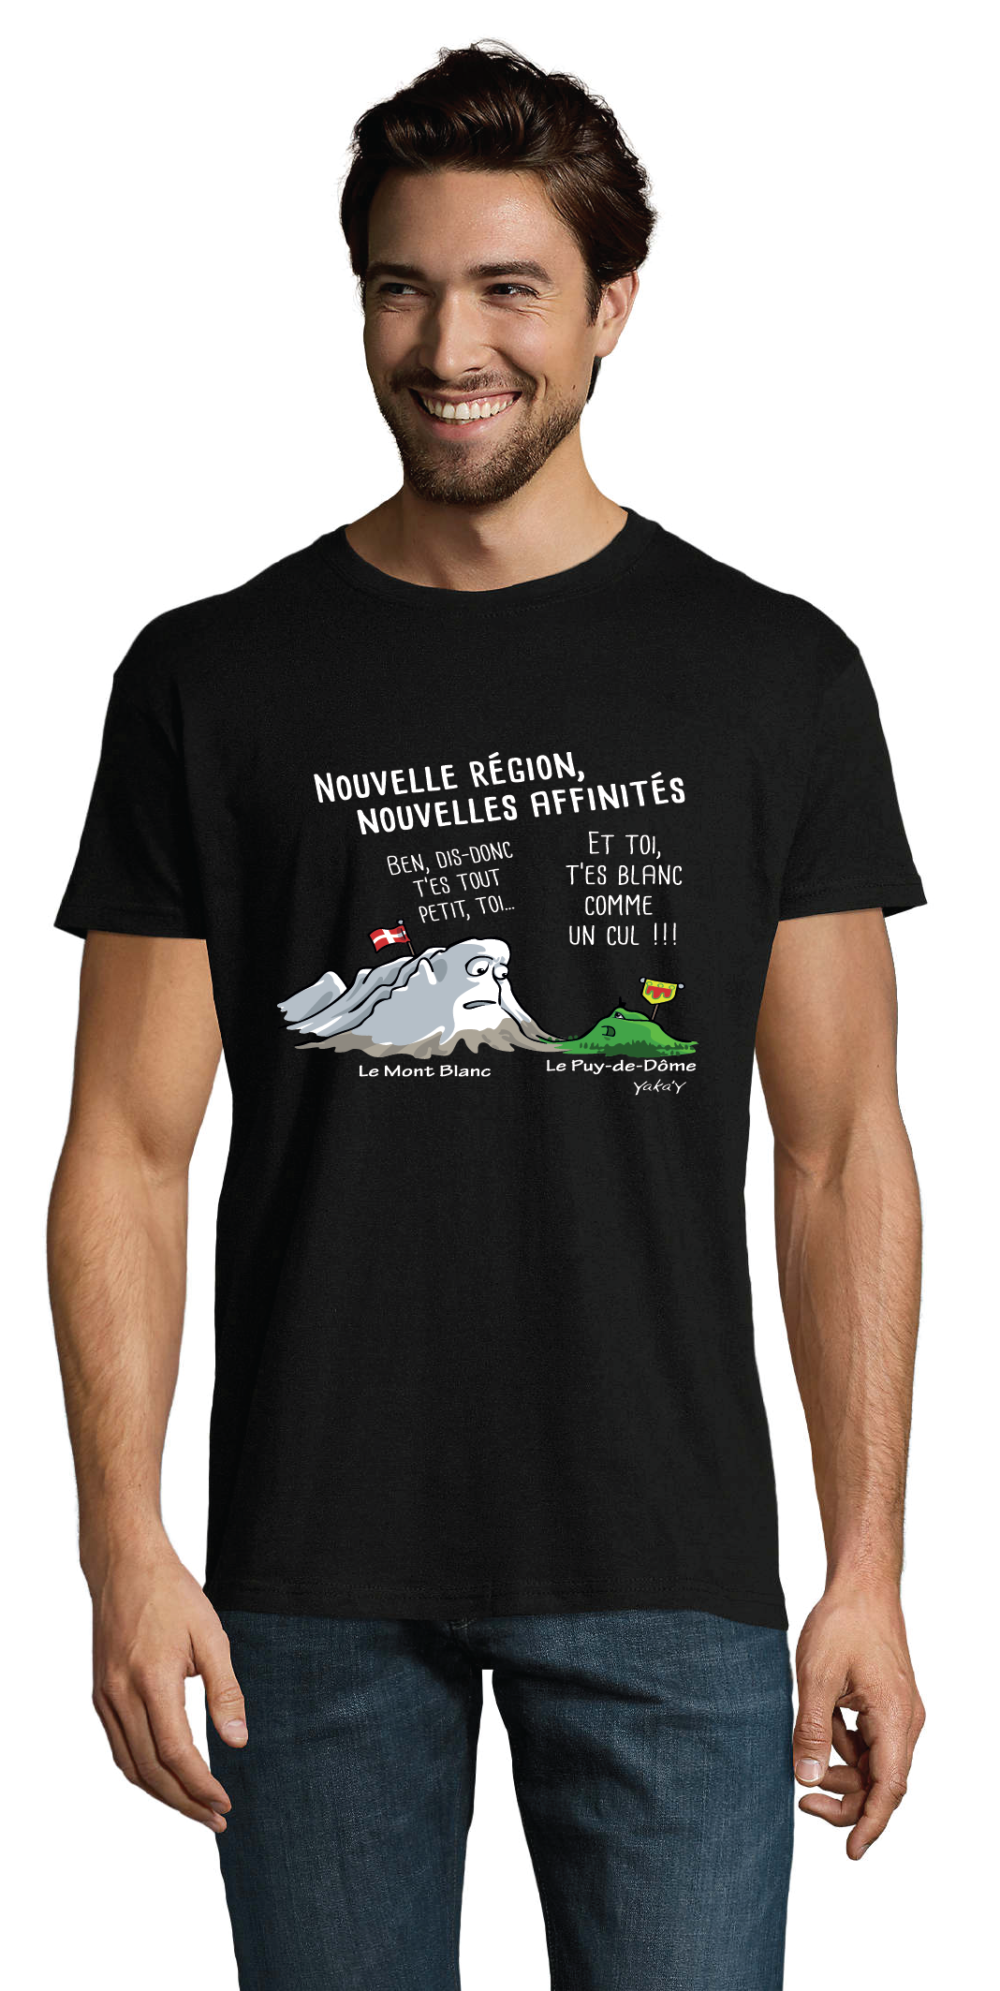 T-shirt région Auvergne rhone Alpes